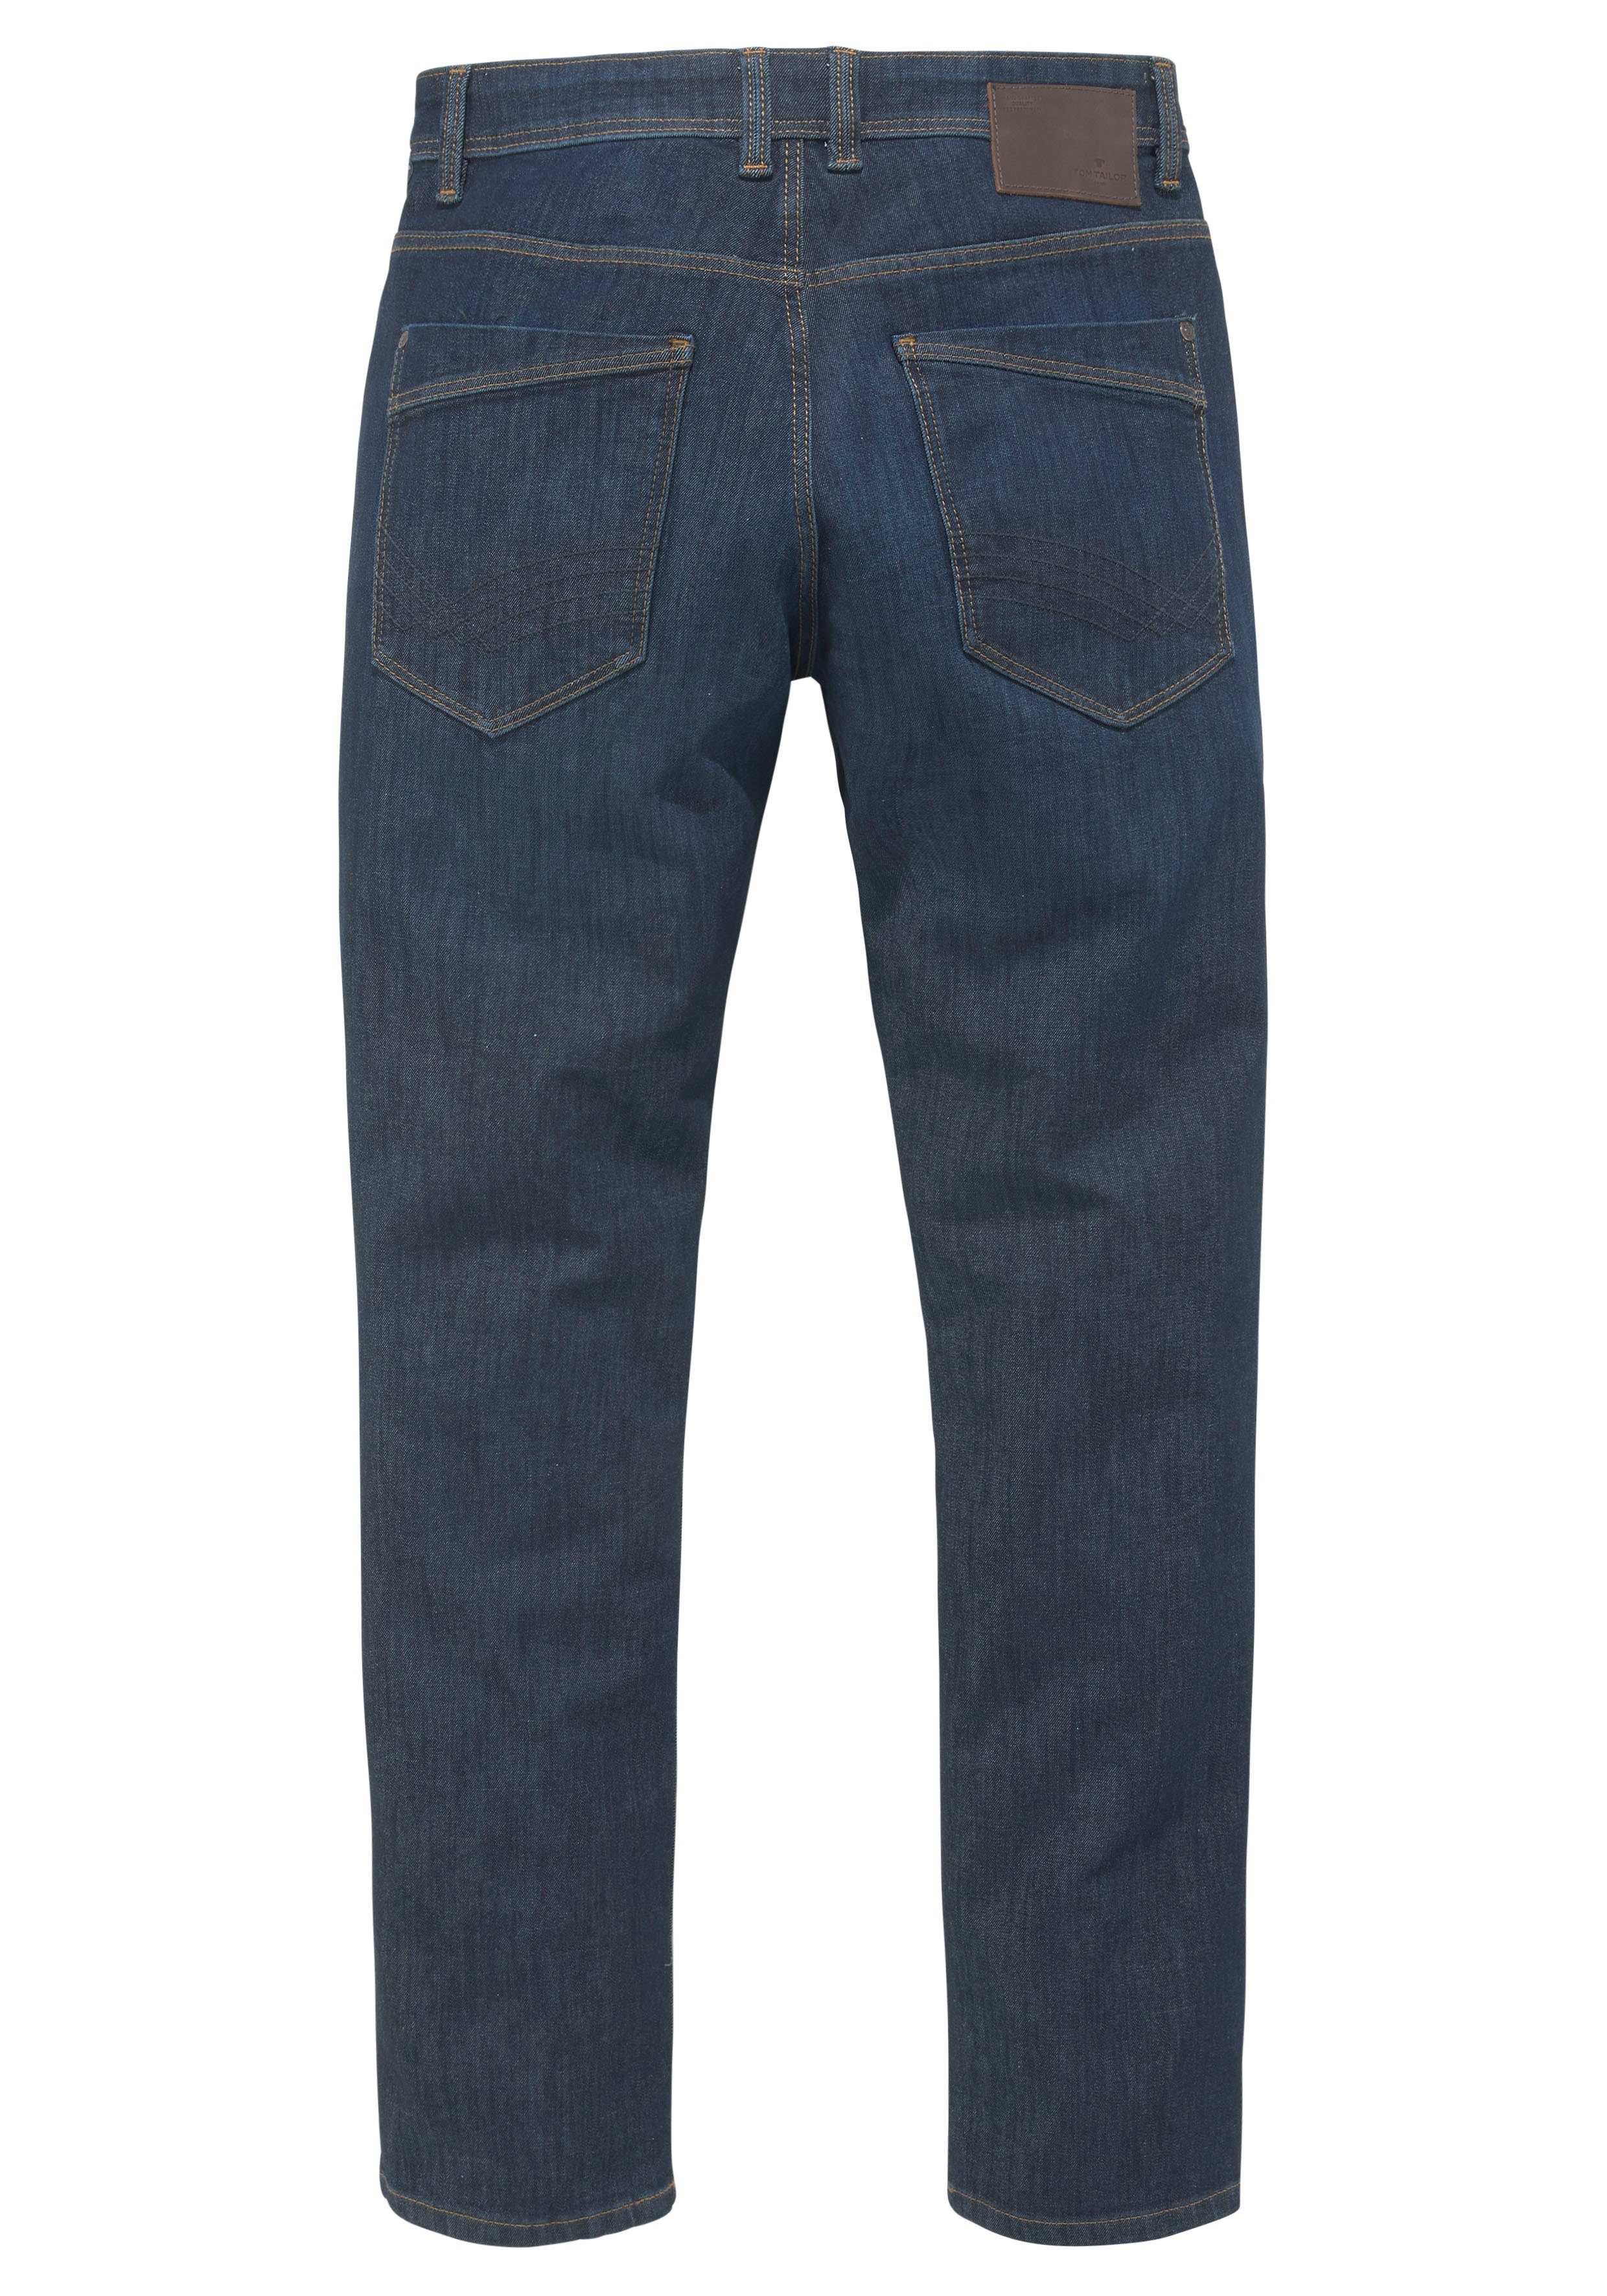 TAILOR TOM Josh mit rinsed Reißverschluss blue 5-Pocket-Jeans